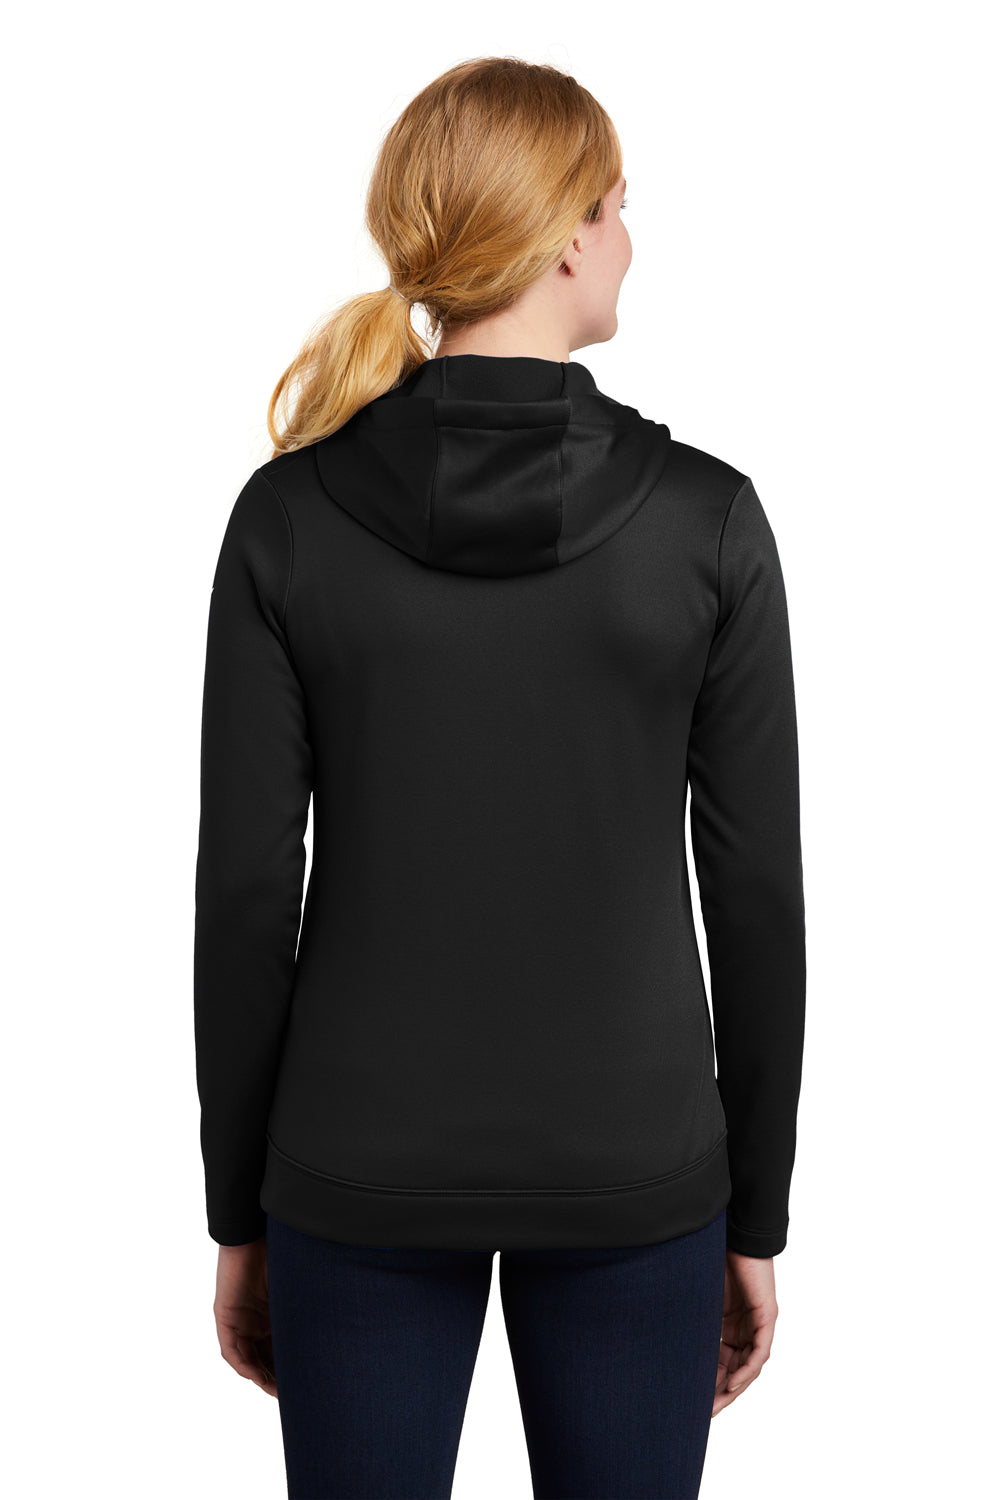 Nike NKAH6264 Womens Therma-Fit Moisture Wicking Fleece Full Zip Hooded Sweatshirt Hoodie Black Model Back